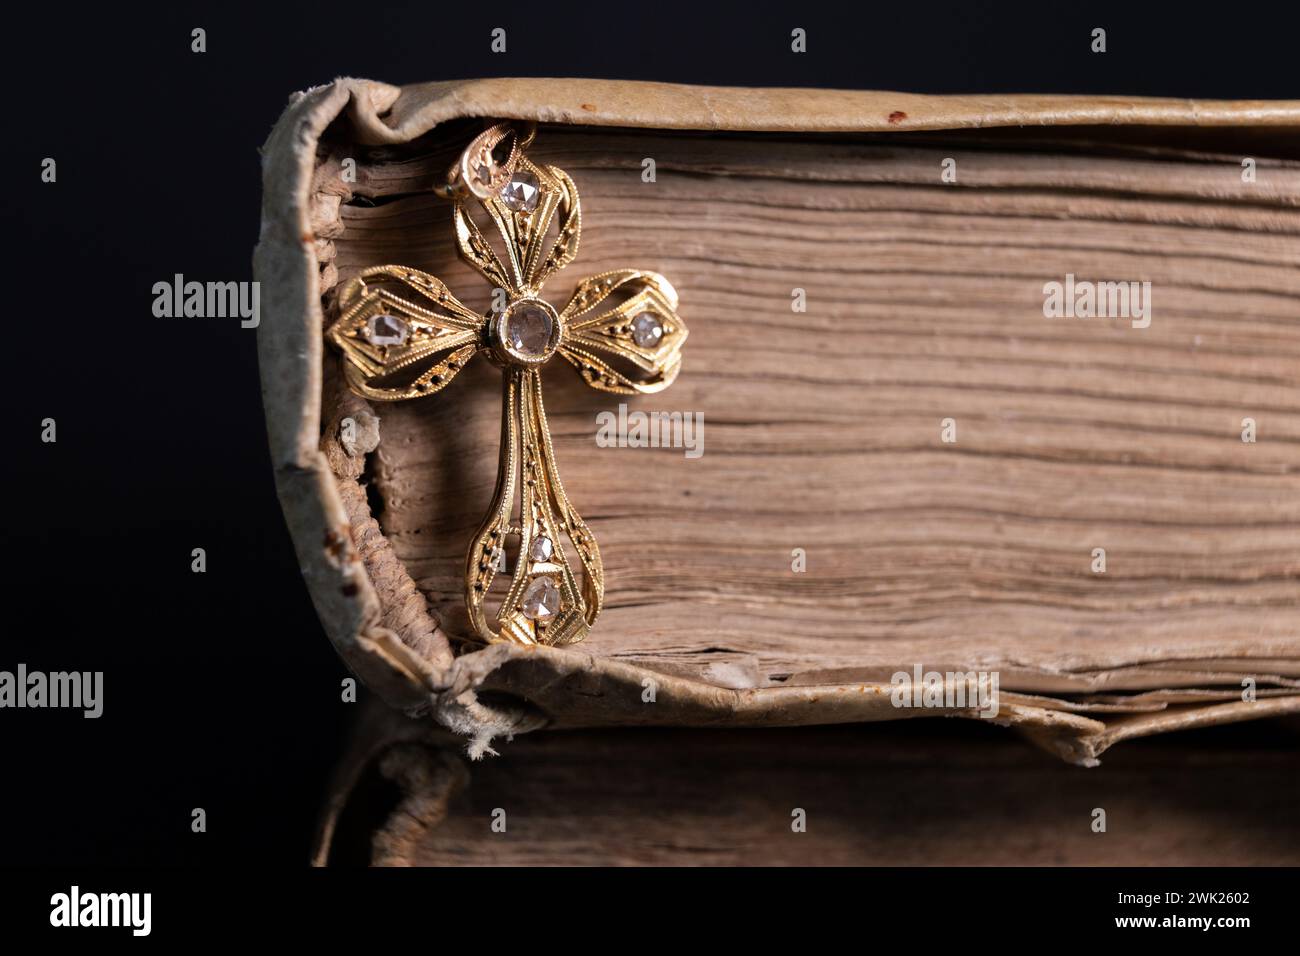 Una croce d'oro e di diamante ambientata in un vecchio libro splendidamente illuminato Foto Stock